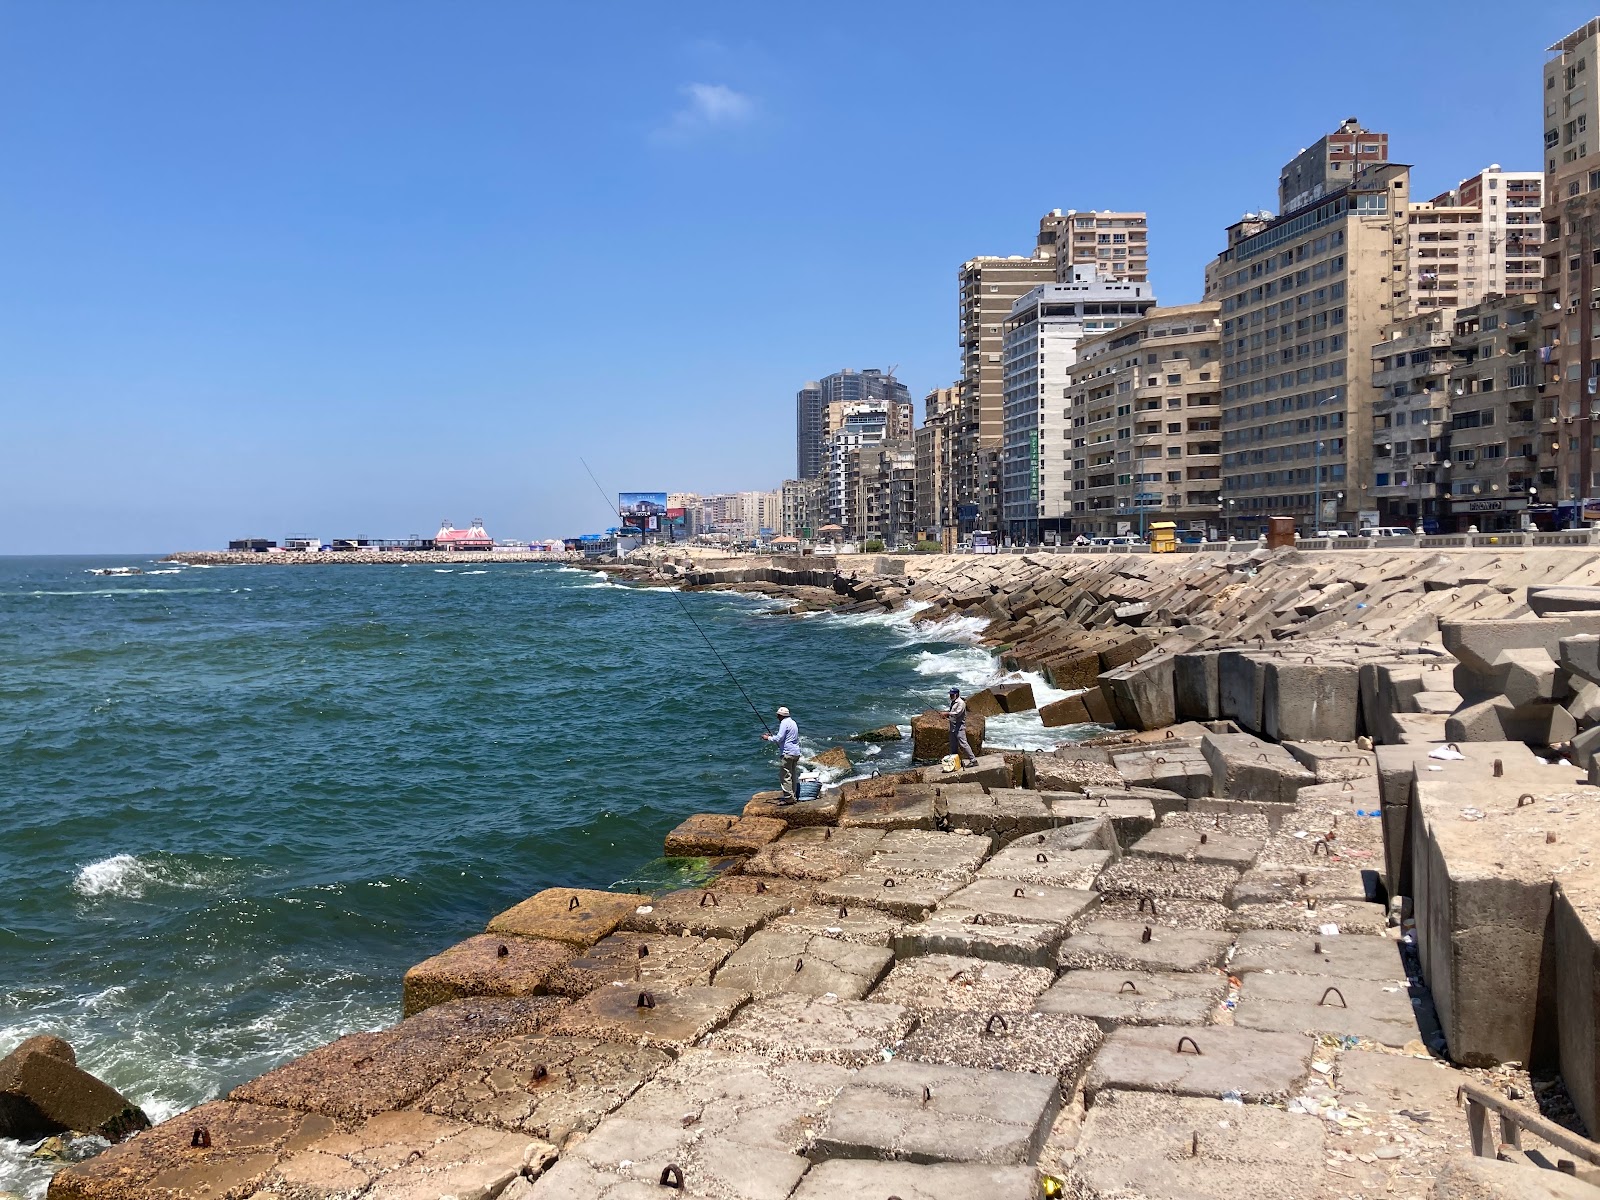 Foto de Alexandria Corniche com alto nível de limpeza